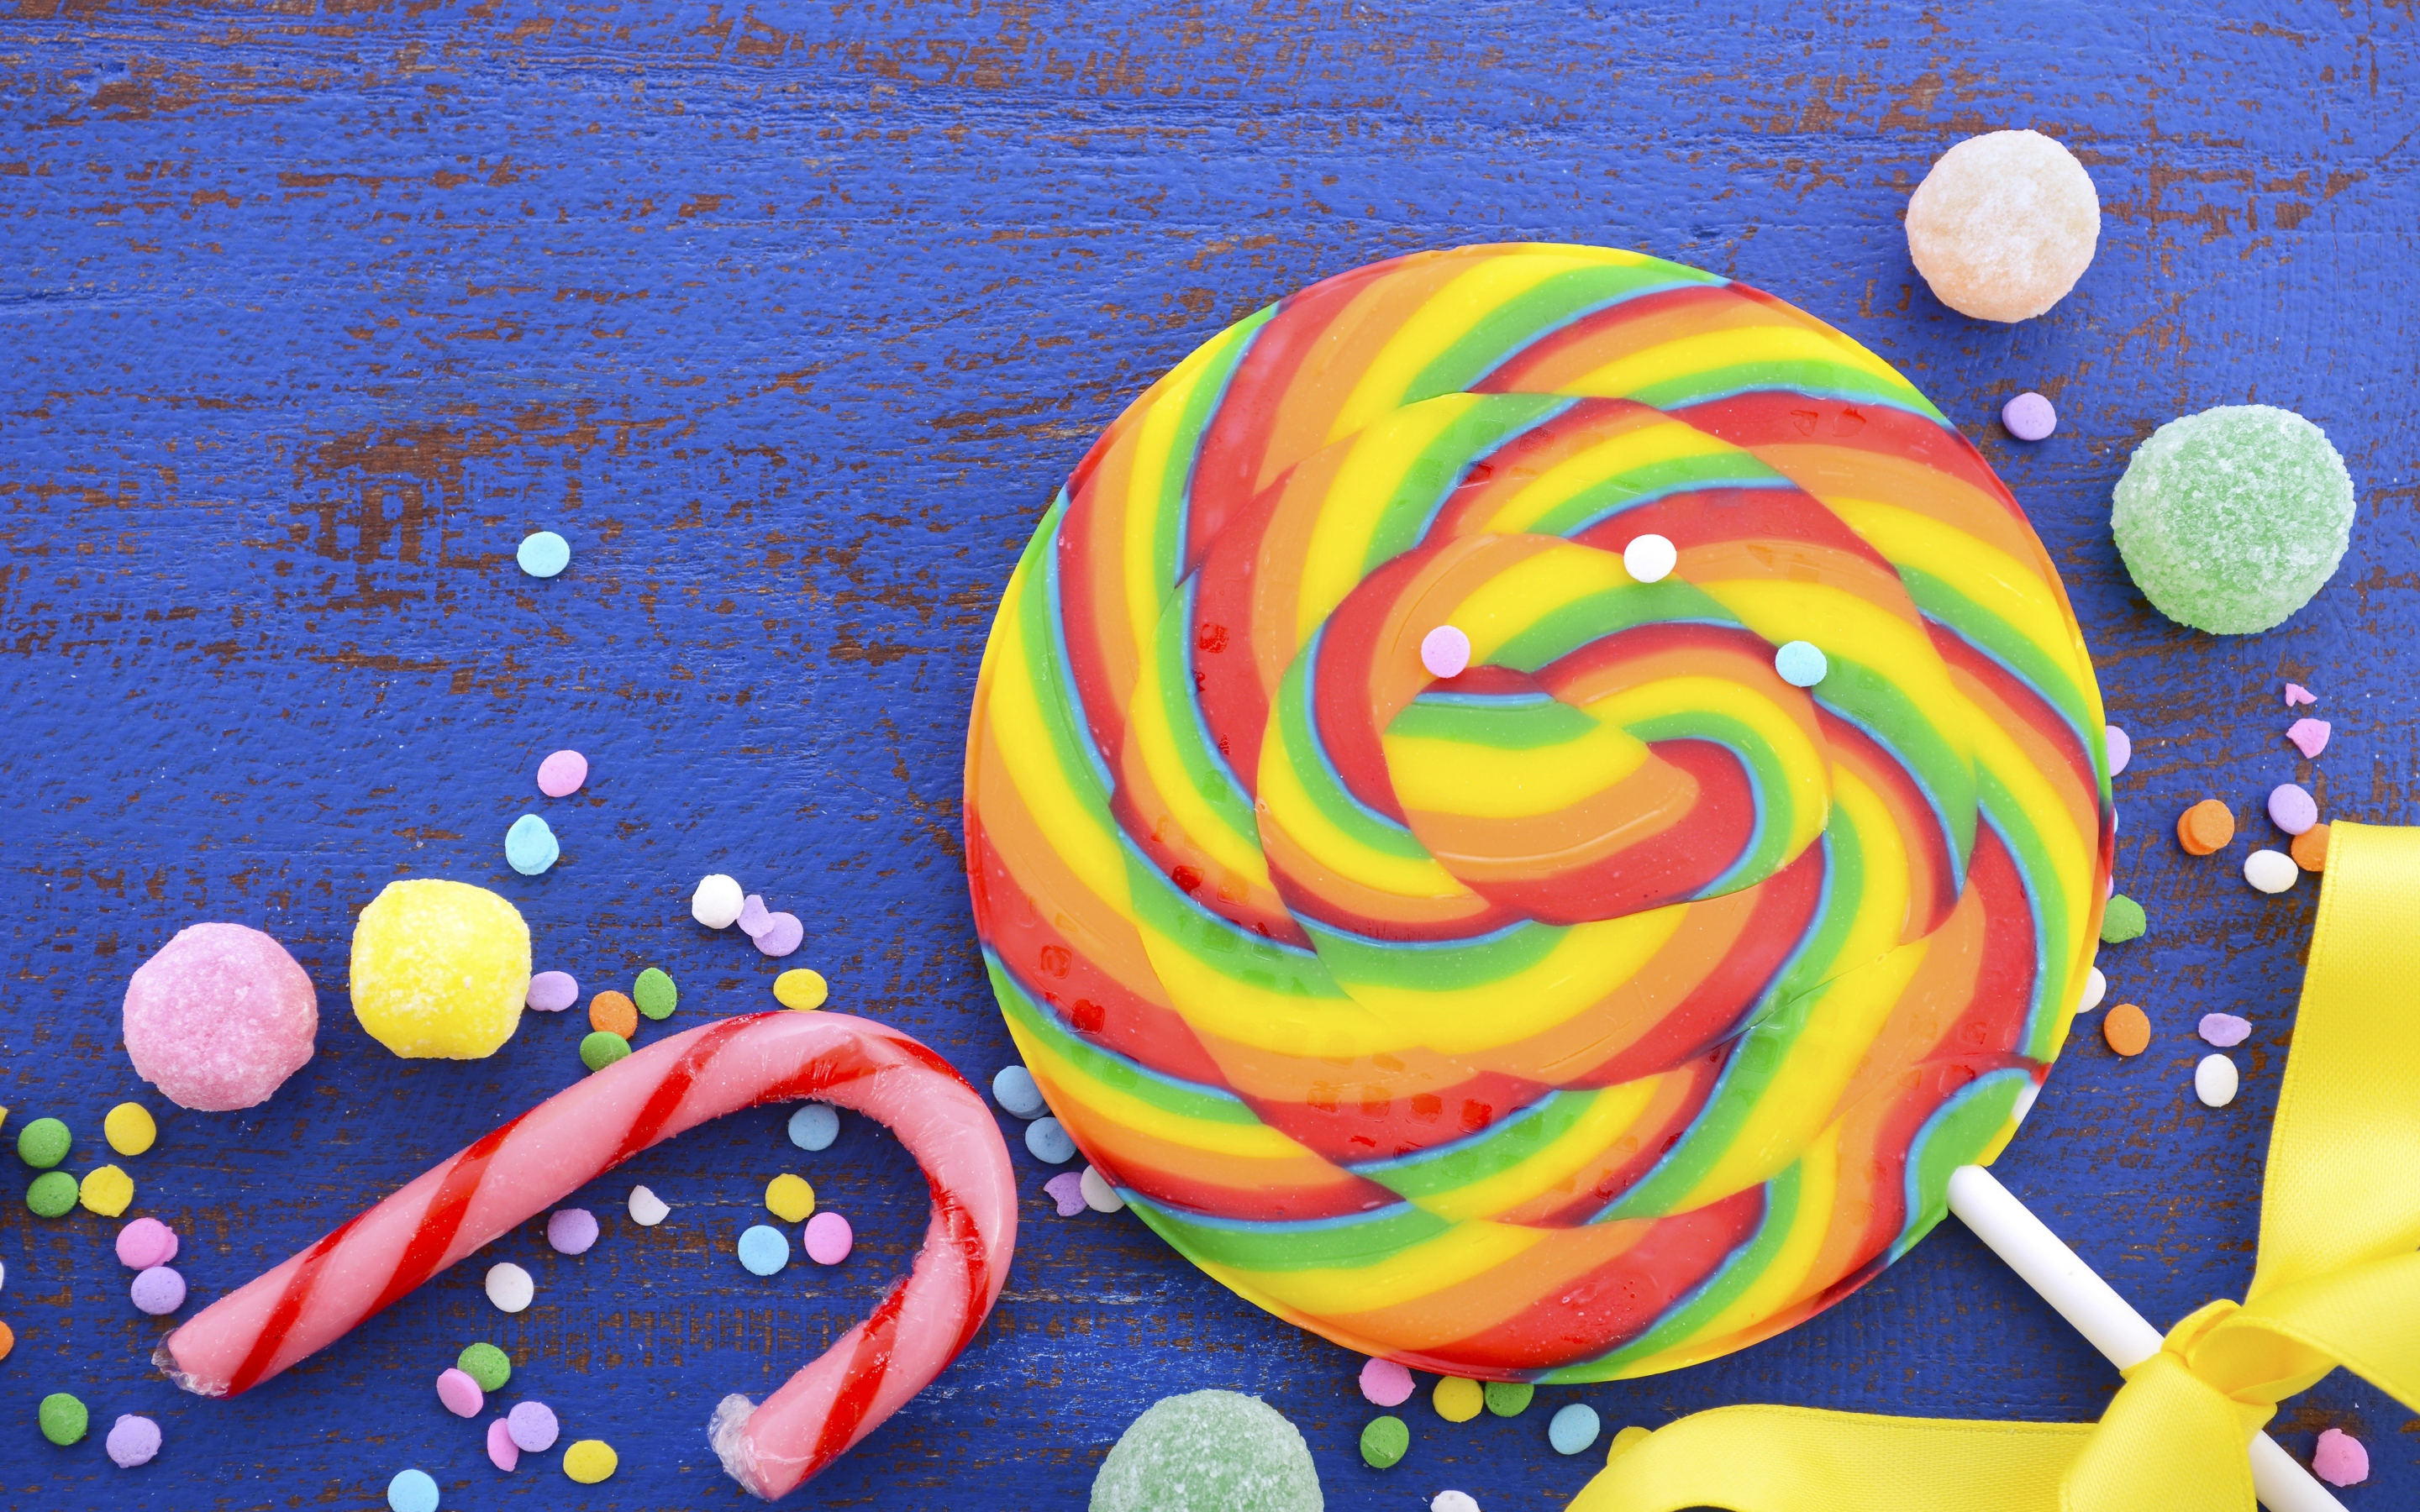 Lollipop. candies, colorful, 2880x1800 wallpaper